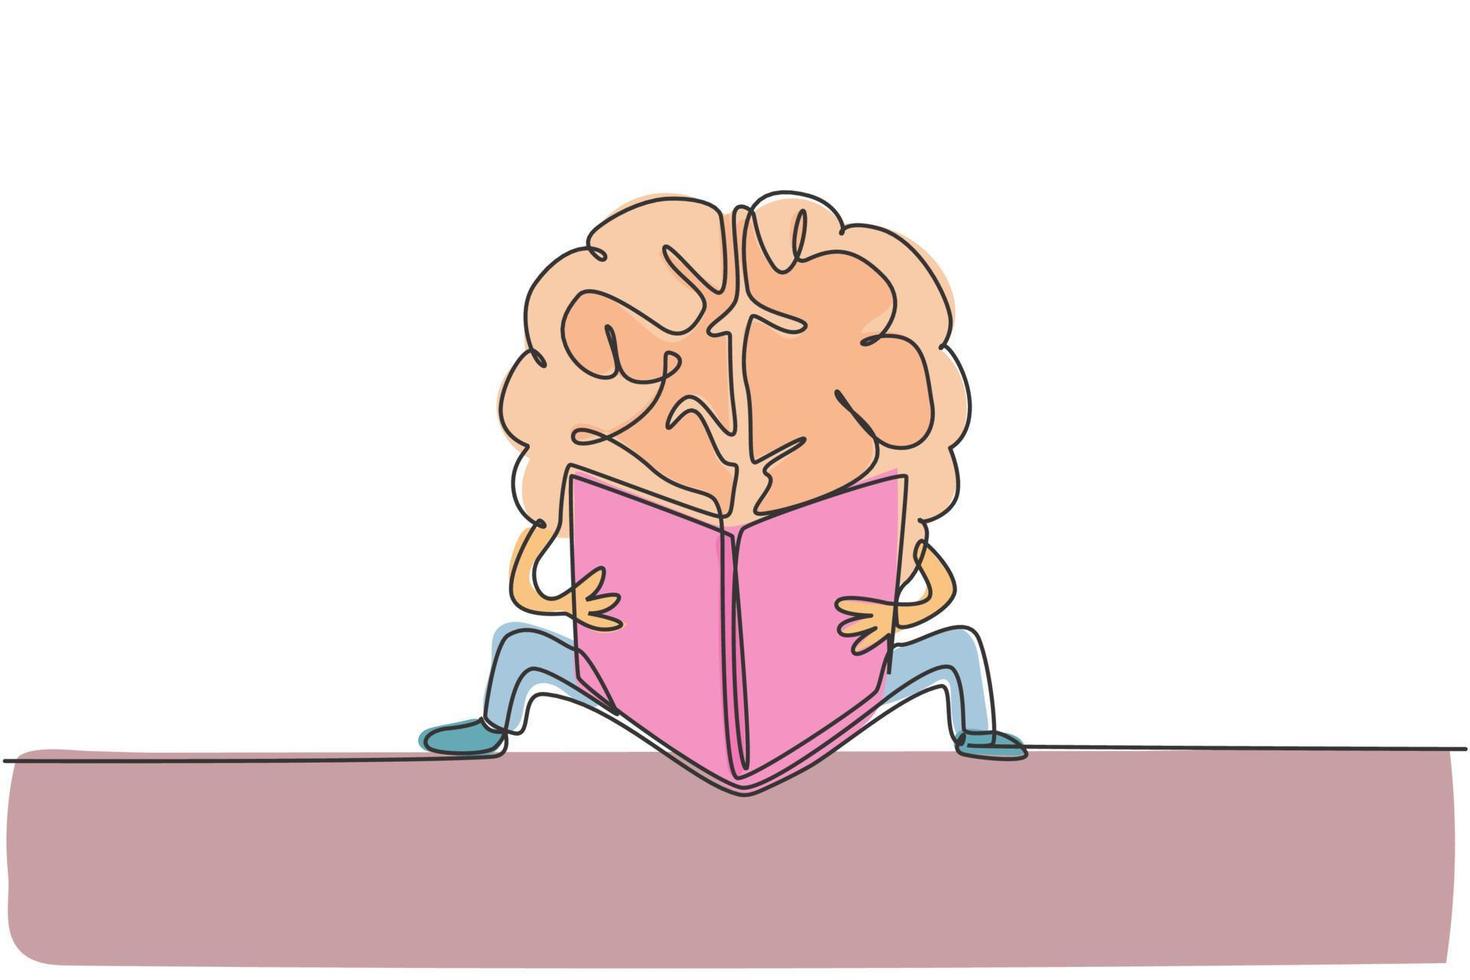 einzelne durchgehende Strichzeichnung des menschlichen Gehirns, das Buch auf dem Boden für das Logo der öffentlichen Bibliothek liest. Smart Bookworm Logo Symbol Konzept. moderne eine linie zeichnen grafikdesign-vektorillustration vektor